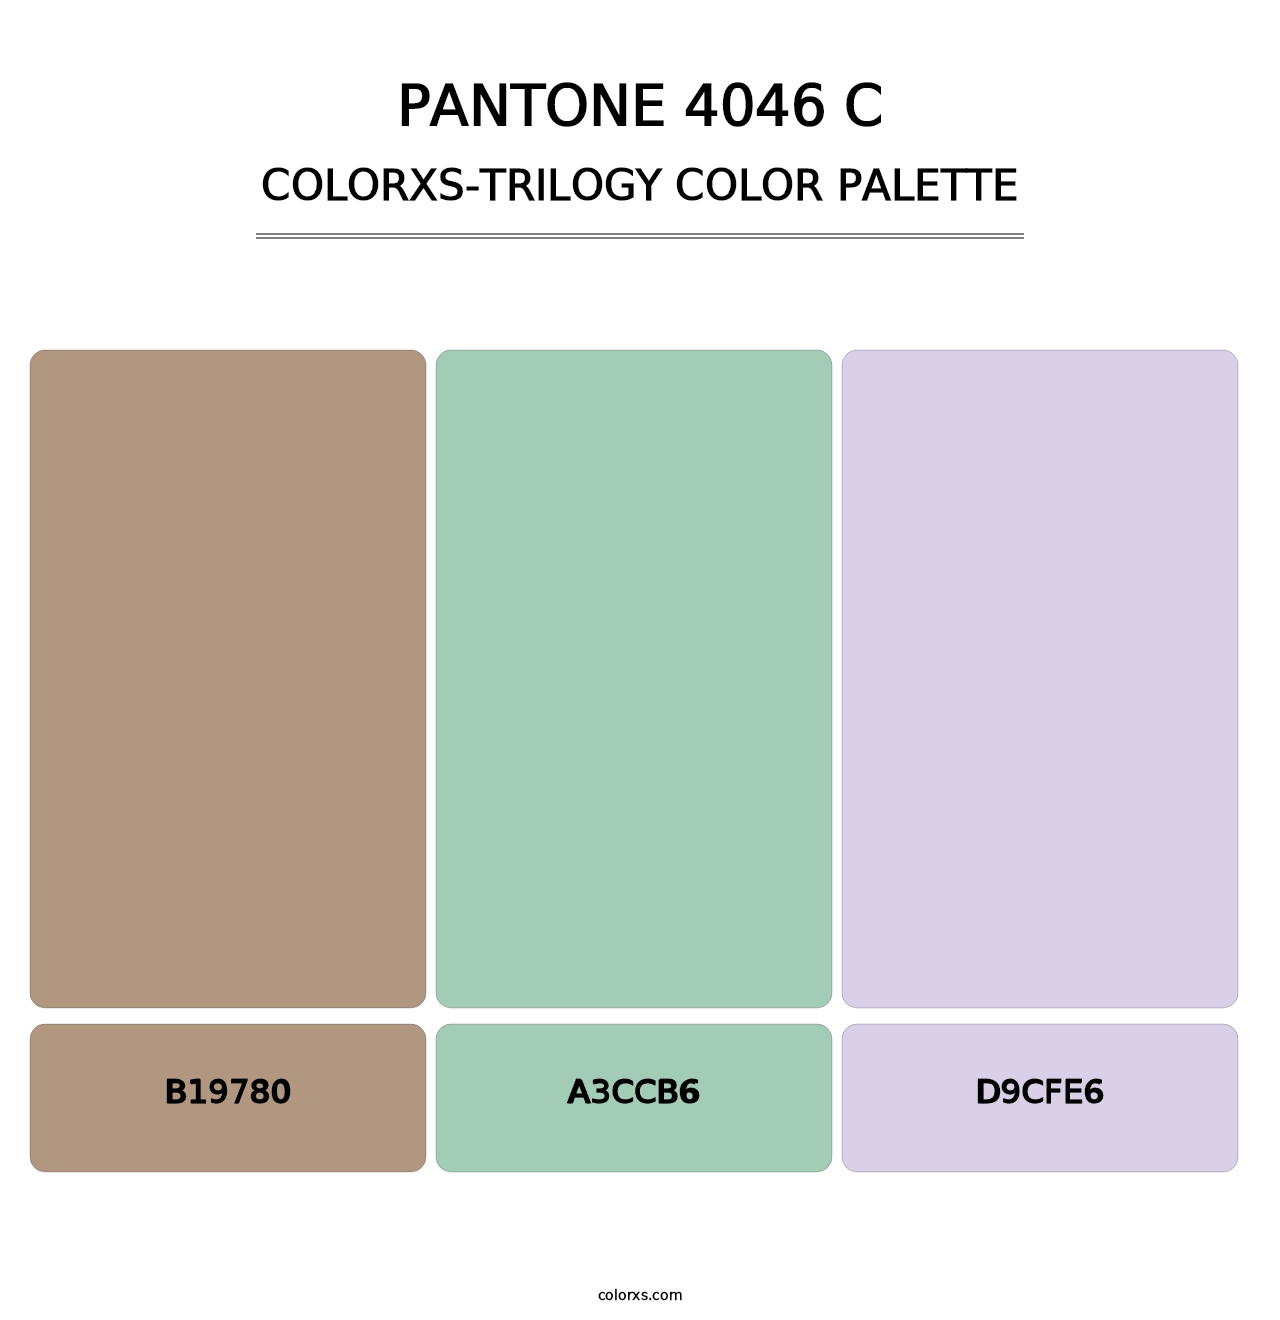 PANTONE 4046 C - Colorxs Trilogy Palette